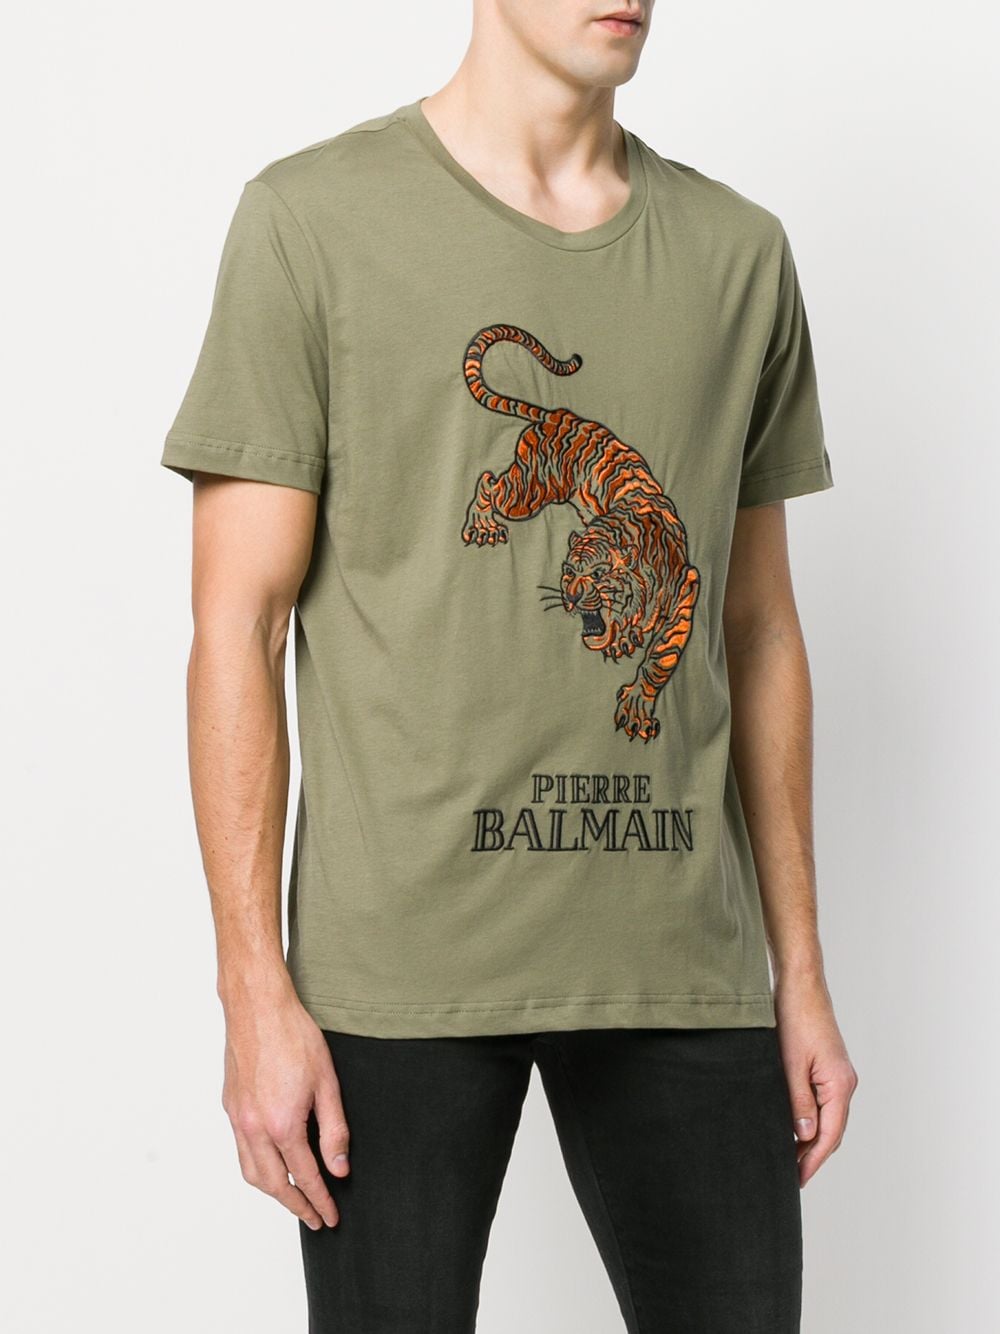 balmain tiger t shirt